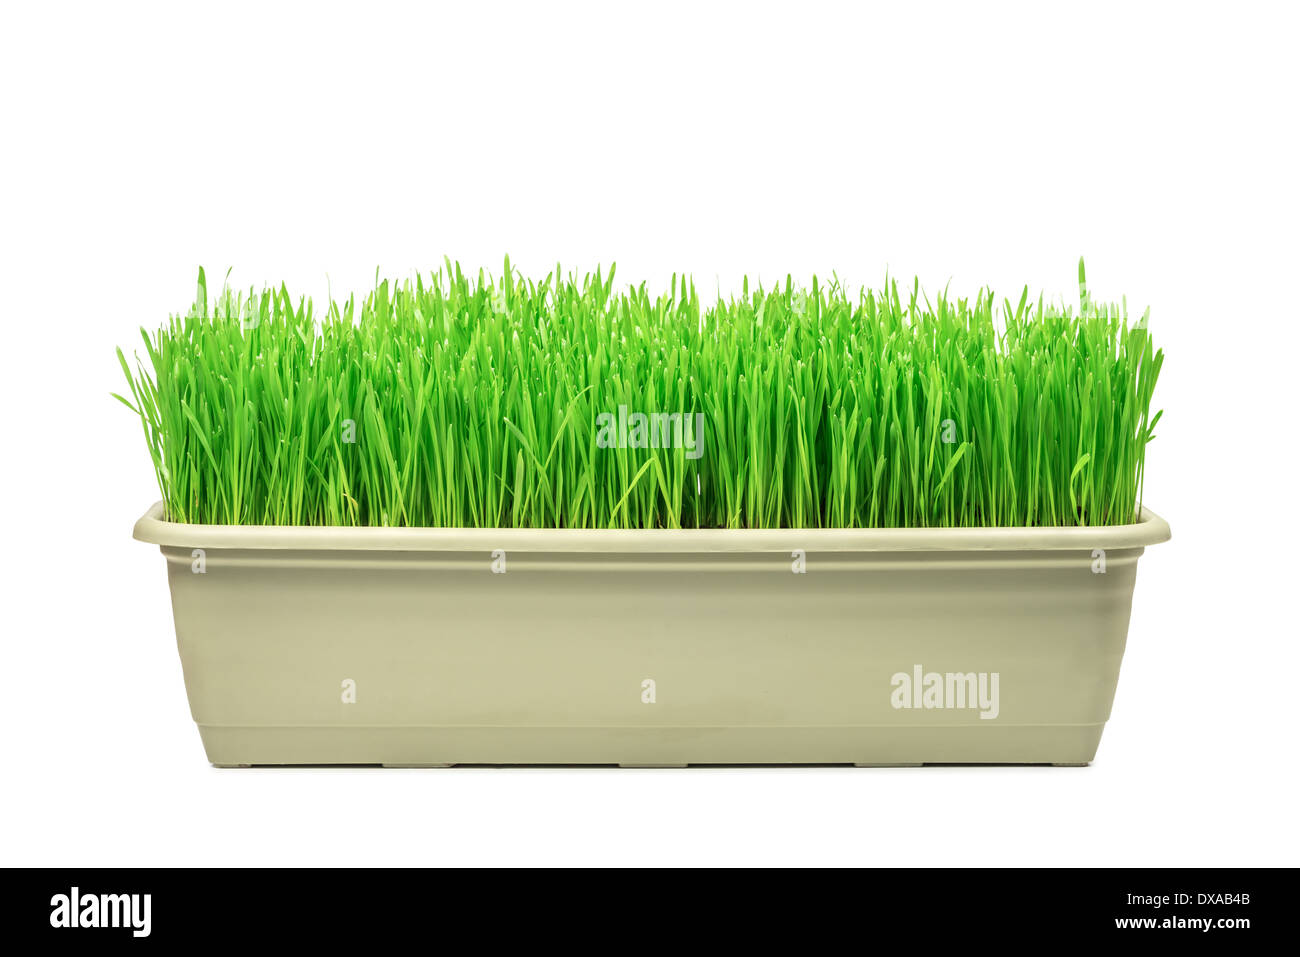 grünen Rasen isoliert auf weißem Hintergrund Stockfoto